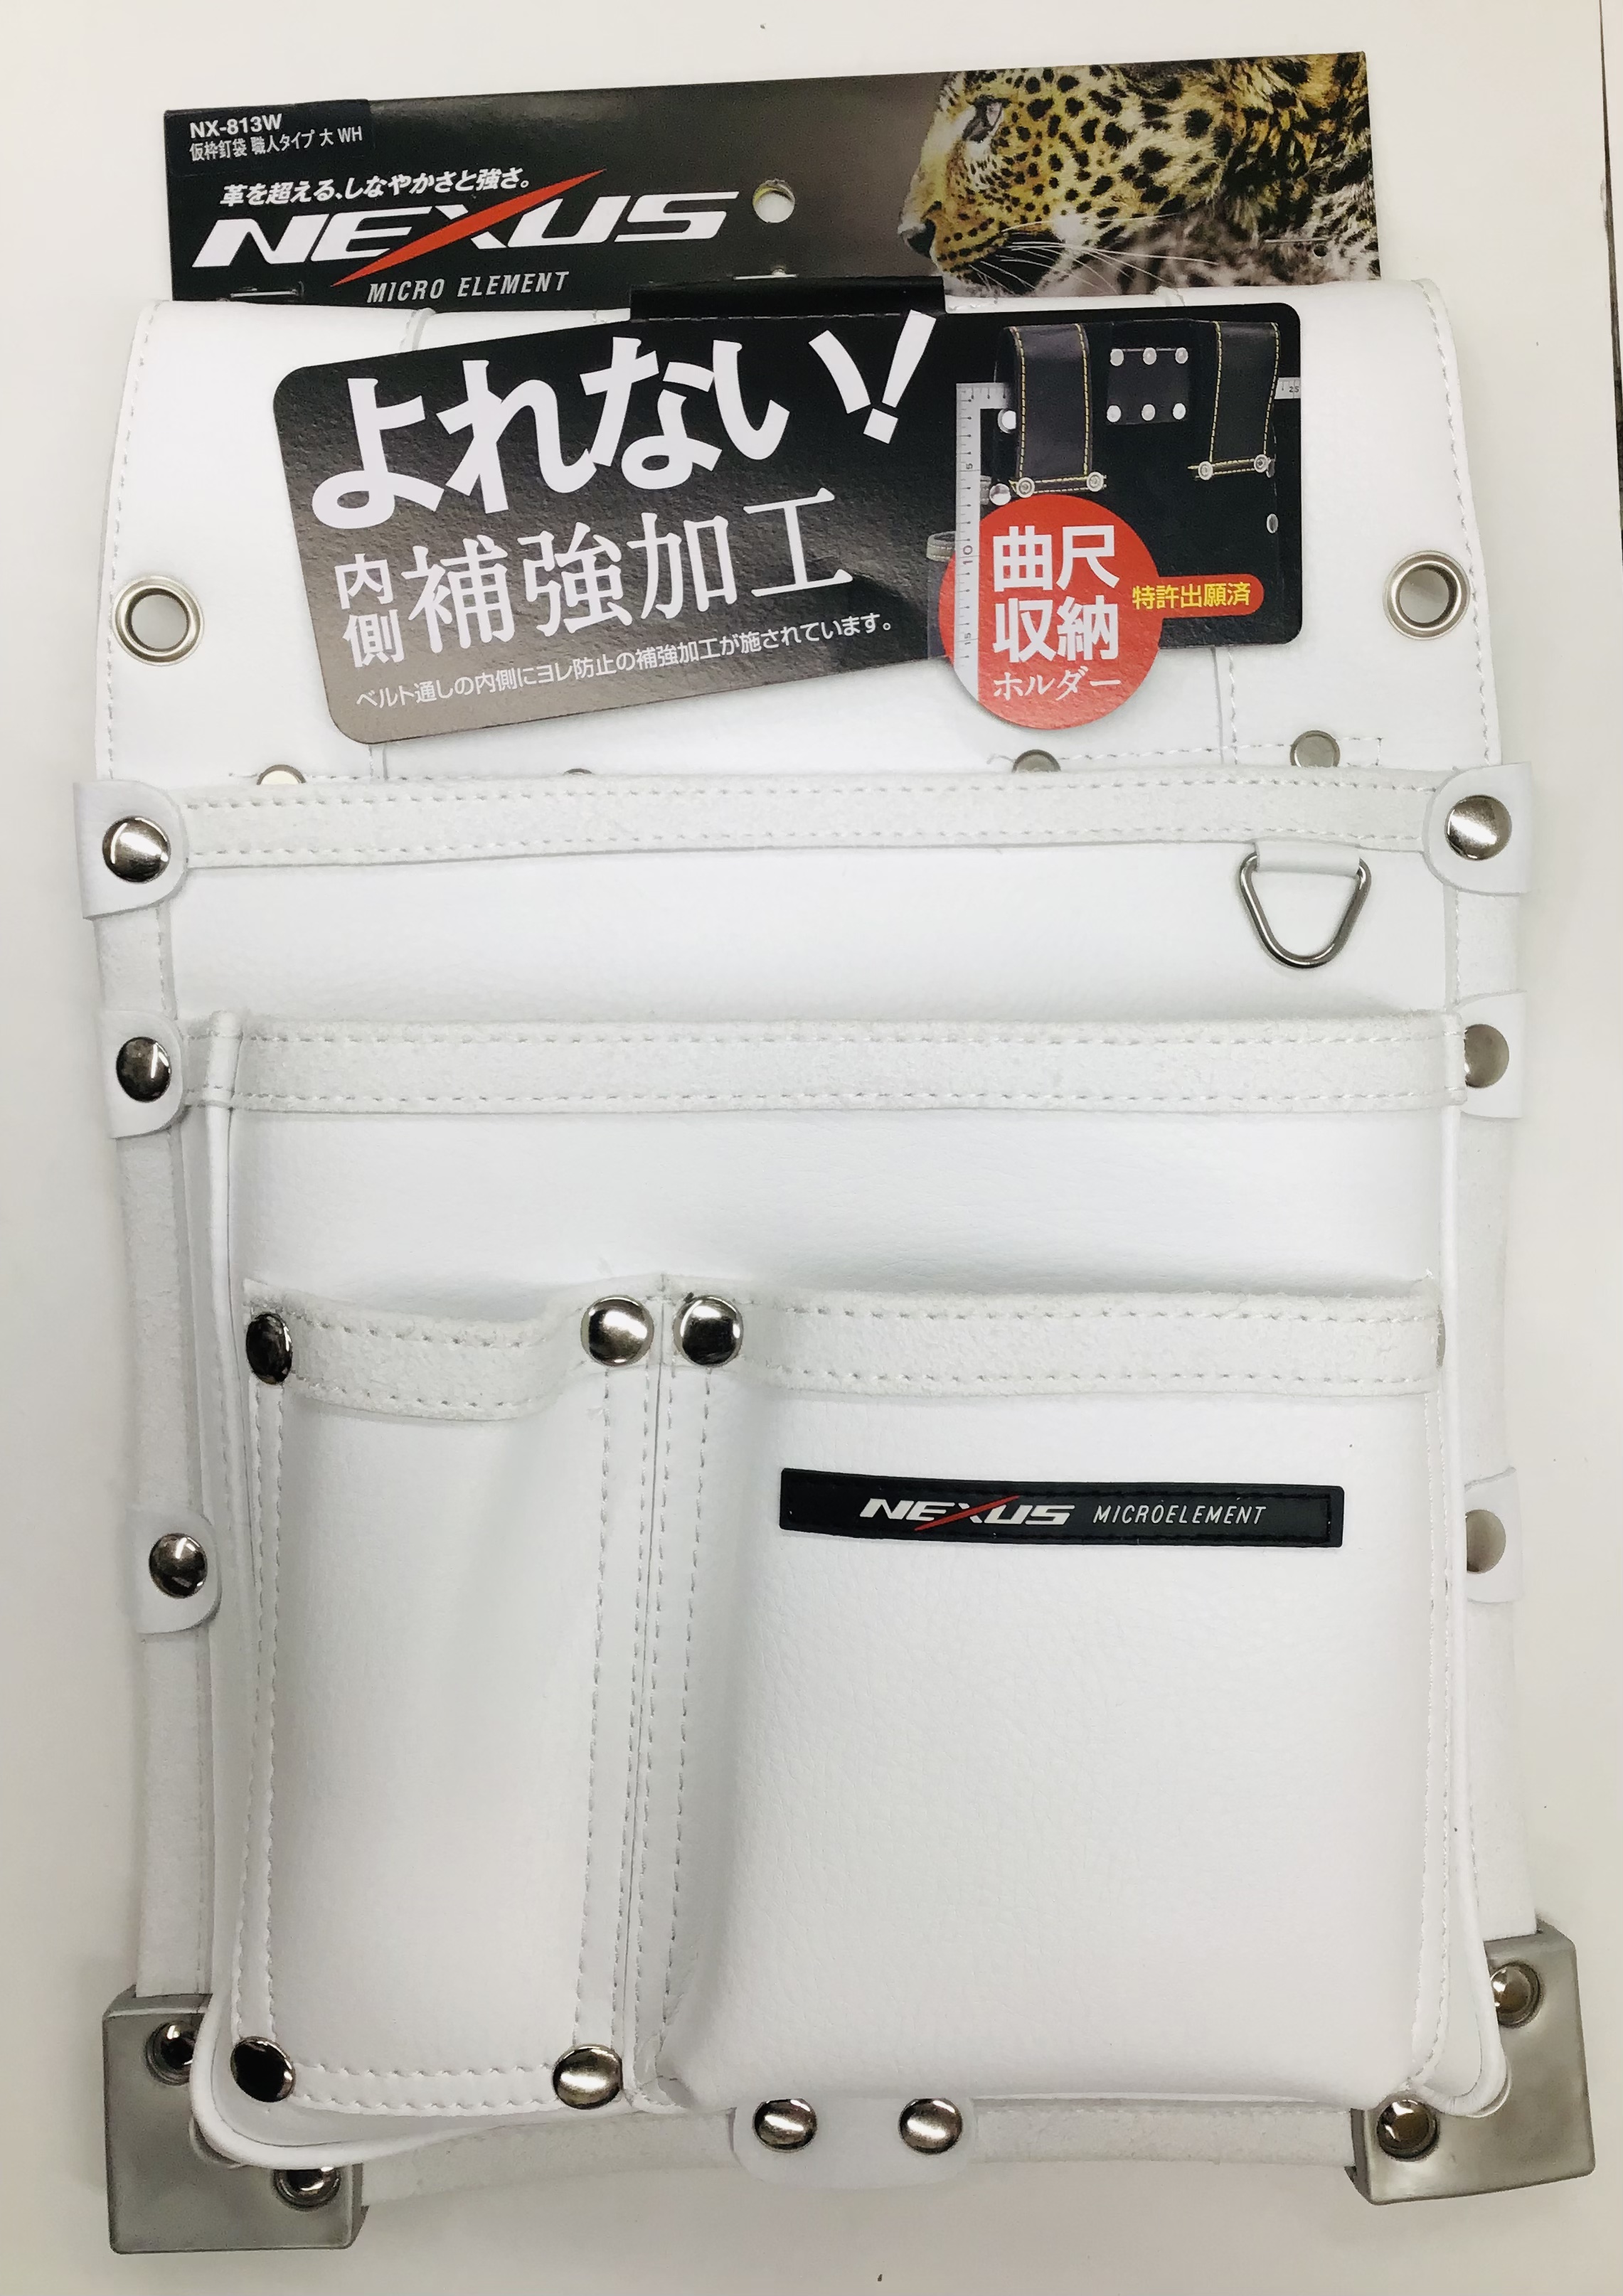 ネクサス NX-813W 仮枠釘袋 職人タイプ ホワイト 腰袋 4949908085183